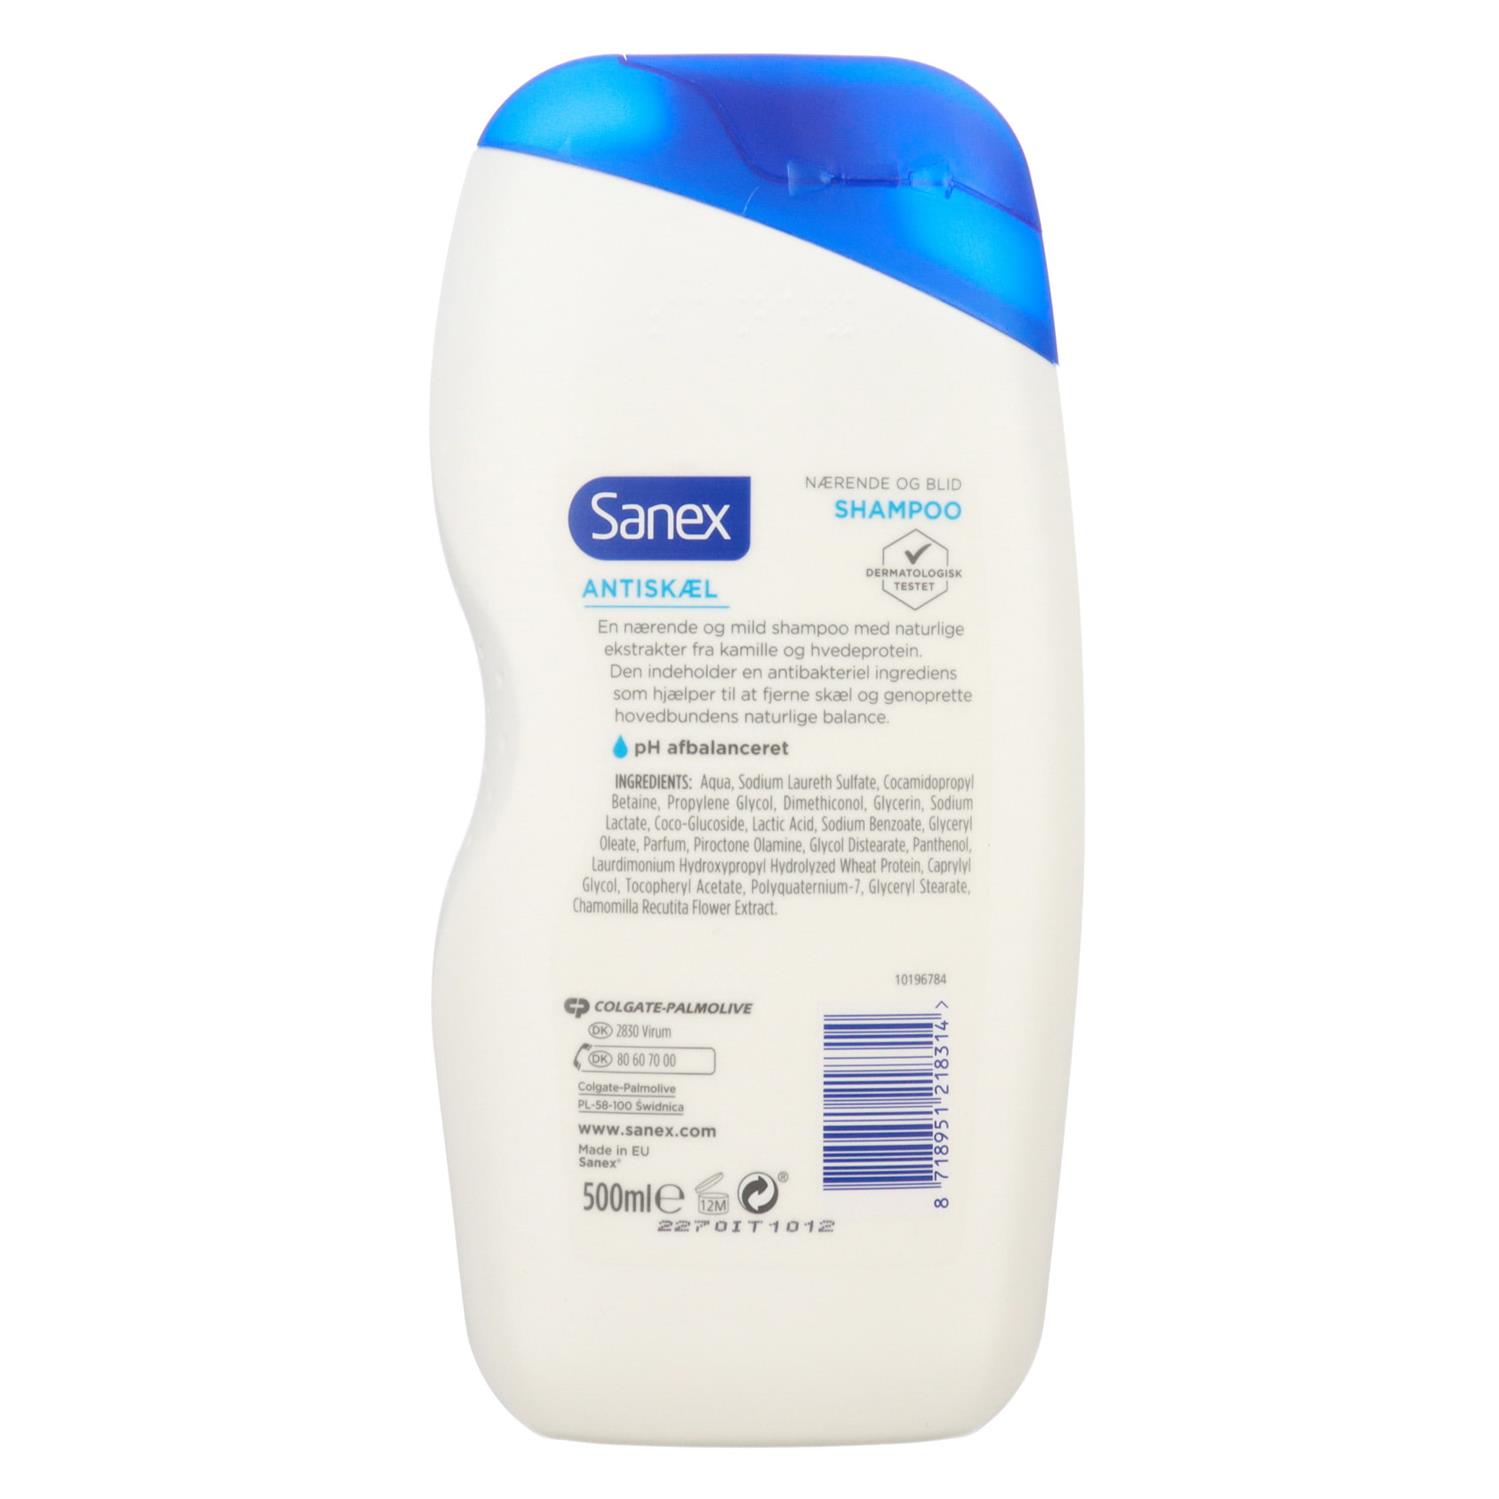 Sanex Shampoo Antiskæl 500 ml. - Grænsehandel til priser